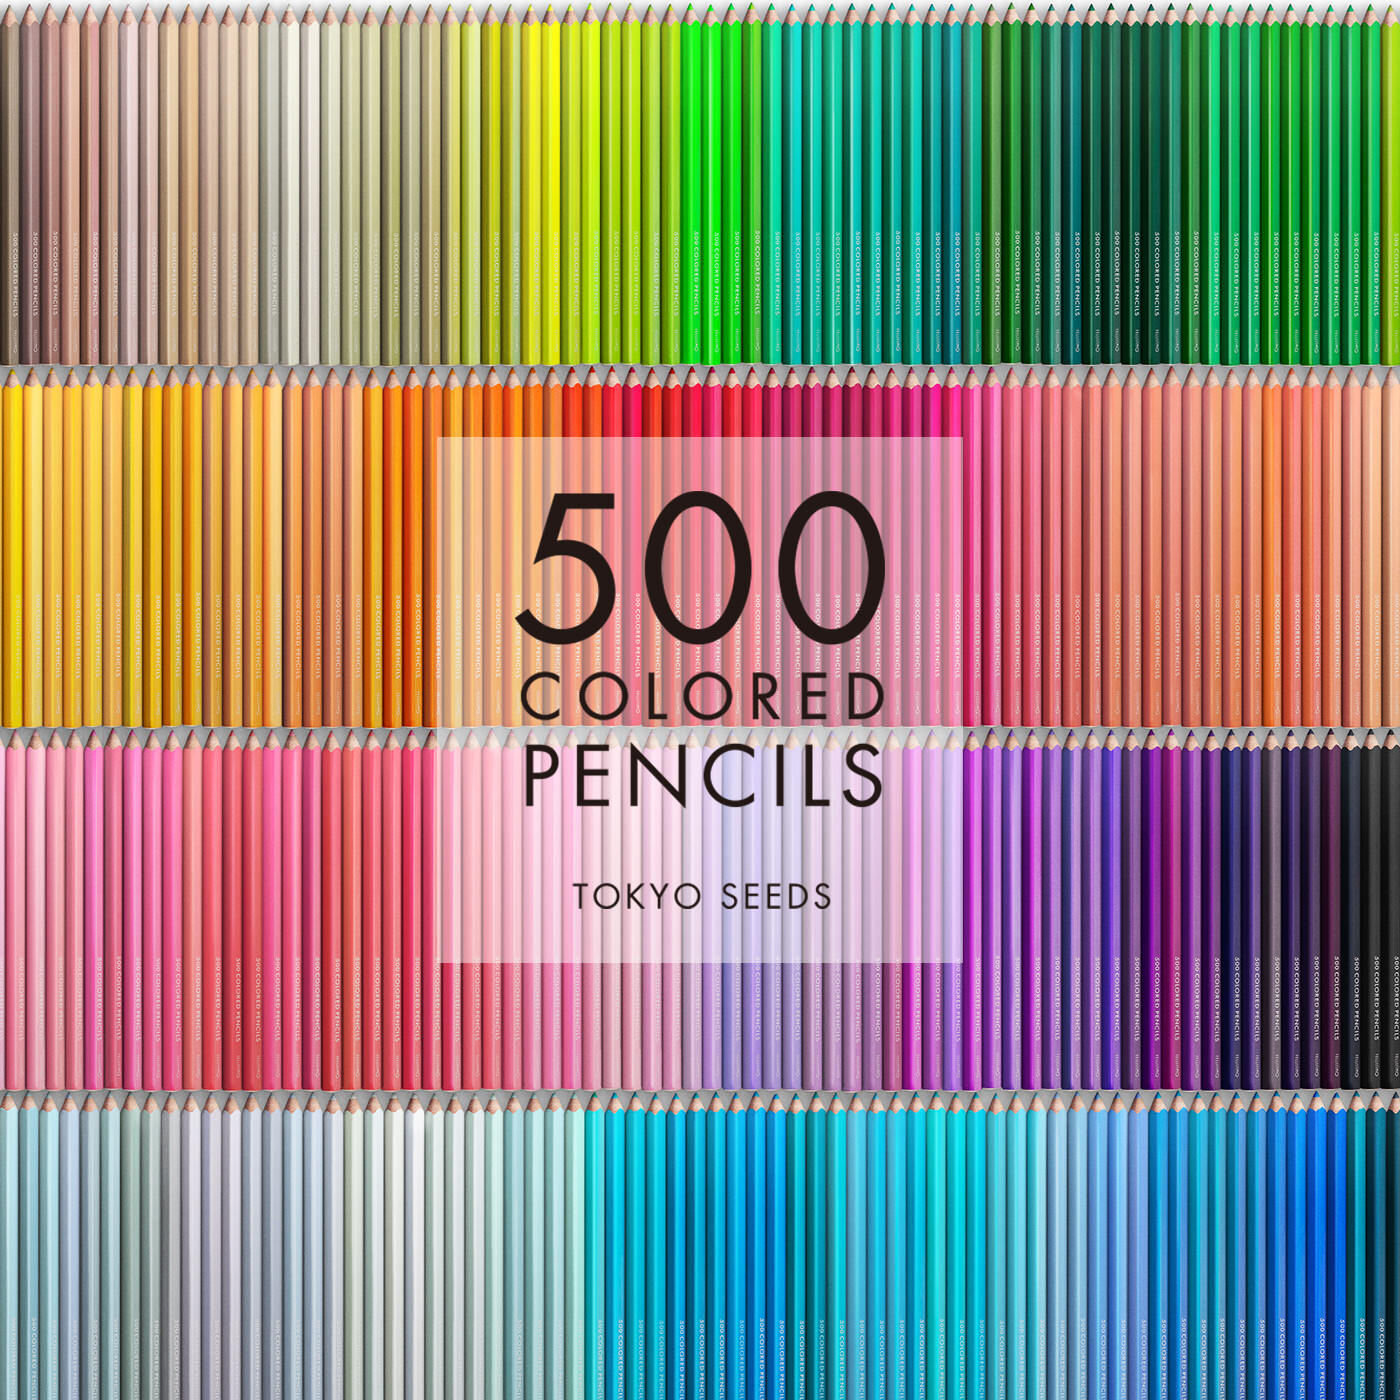 Real Stock|【131/500 IVY DELUXE】500色の色えんぴつ TOKYO SEEDS|1992年、世界初の「500色」という膨大な色数の色えんぴつが誕生して以来、その販売数は発売当初から合わせると、世界55ヵ国10万セット以上。今回、メイド・イン・ジャパンにこだわり、すべてが新しく生まれ変わって登場しました。